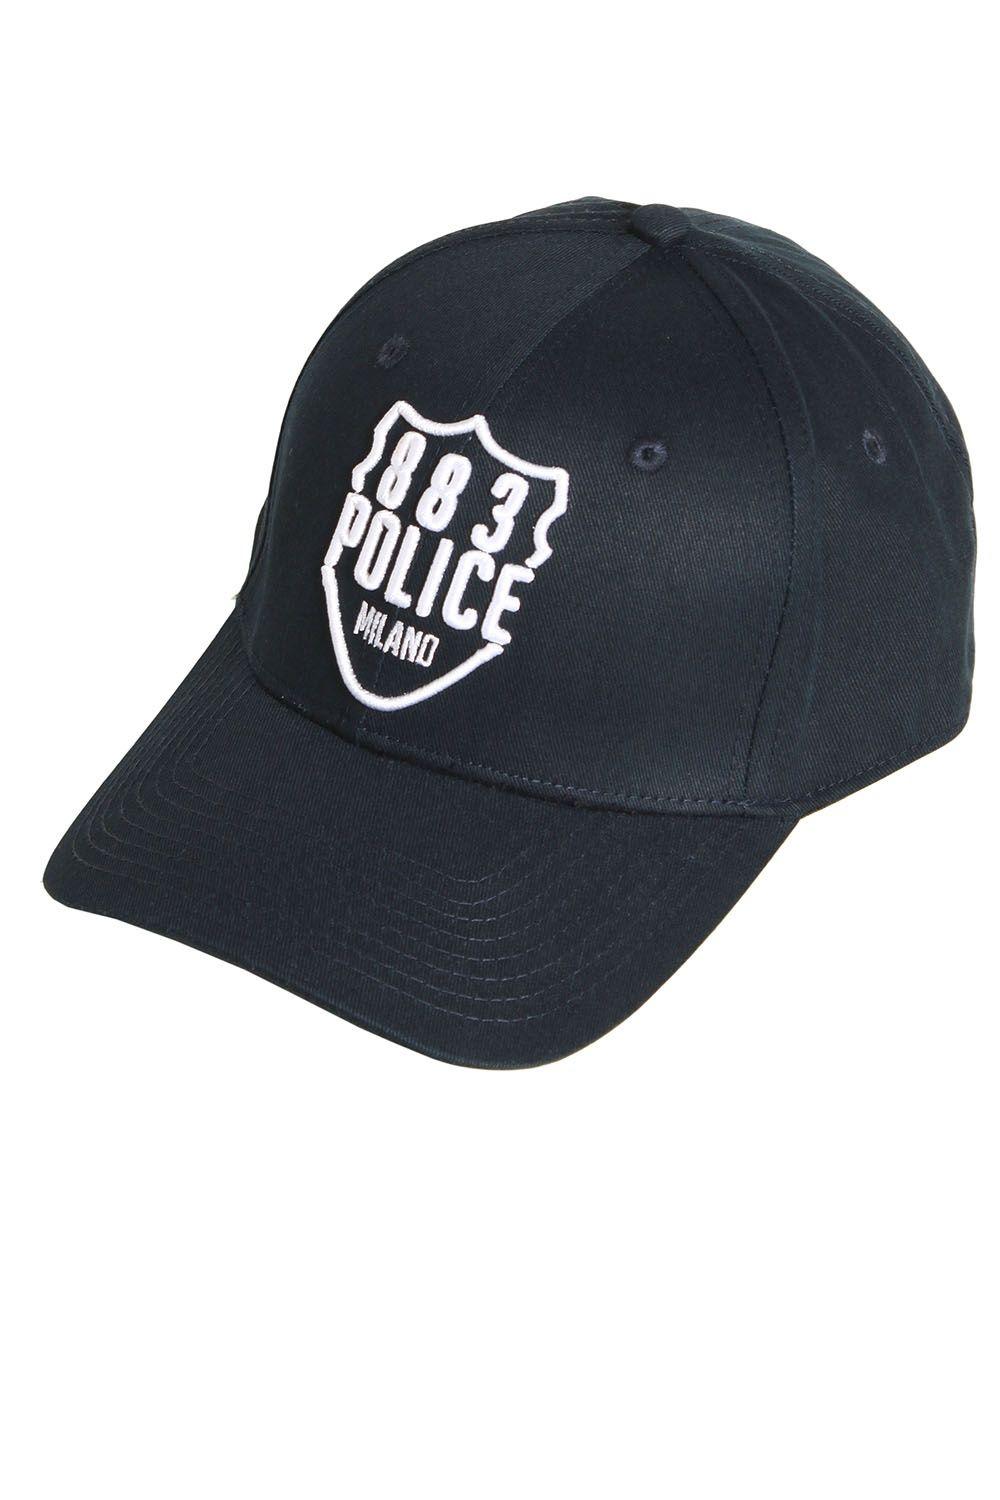 Police Cap Logo - 883 Police Titan Baseball Cap | Shop 883 Police Caps & Accessories